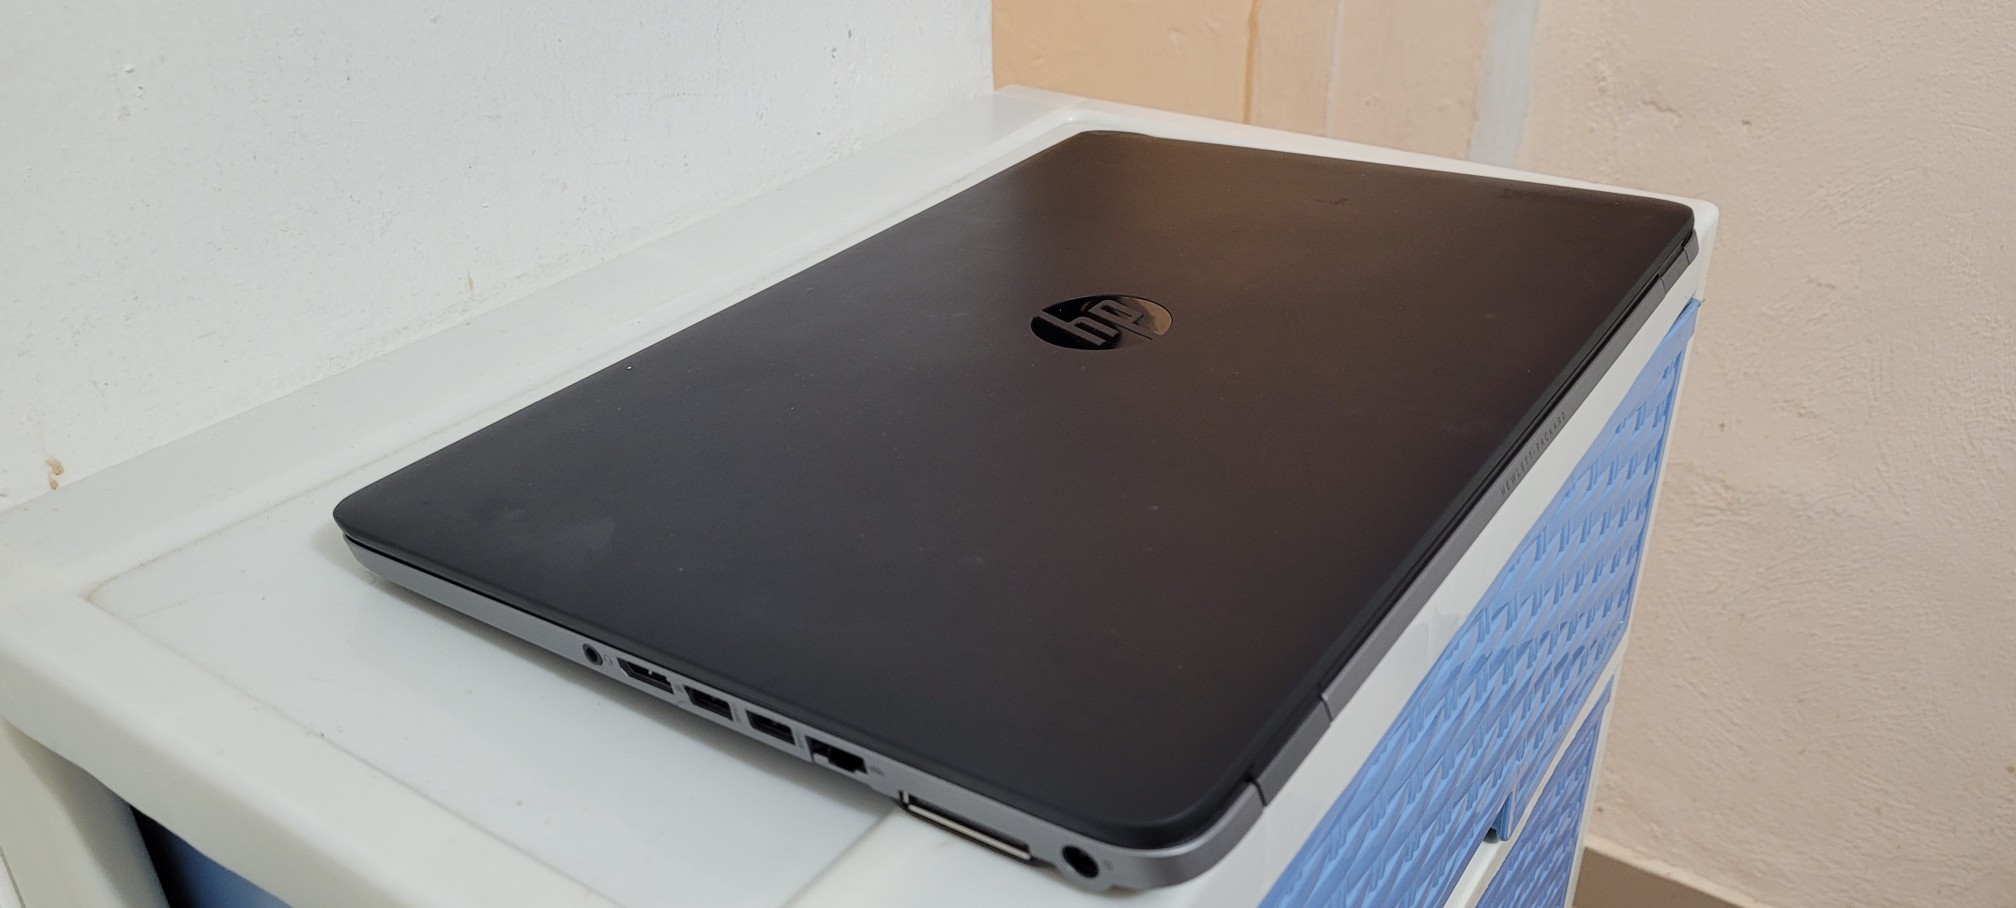 computadoras y laptops - Hp elitebook 850 17 Pulg Core i5 Ram 8gb Disco 256gb SSD Teclado luminico 2